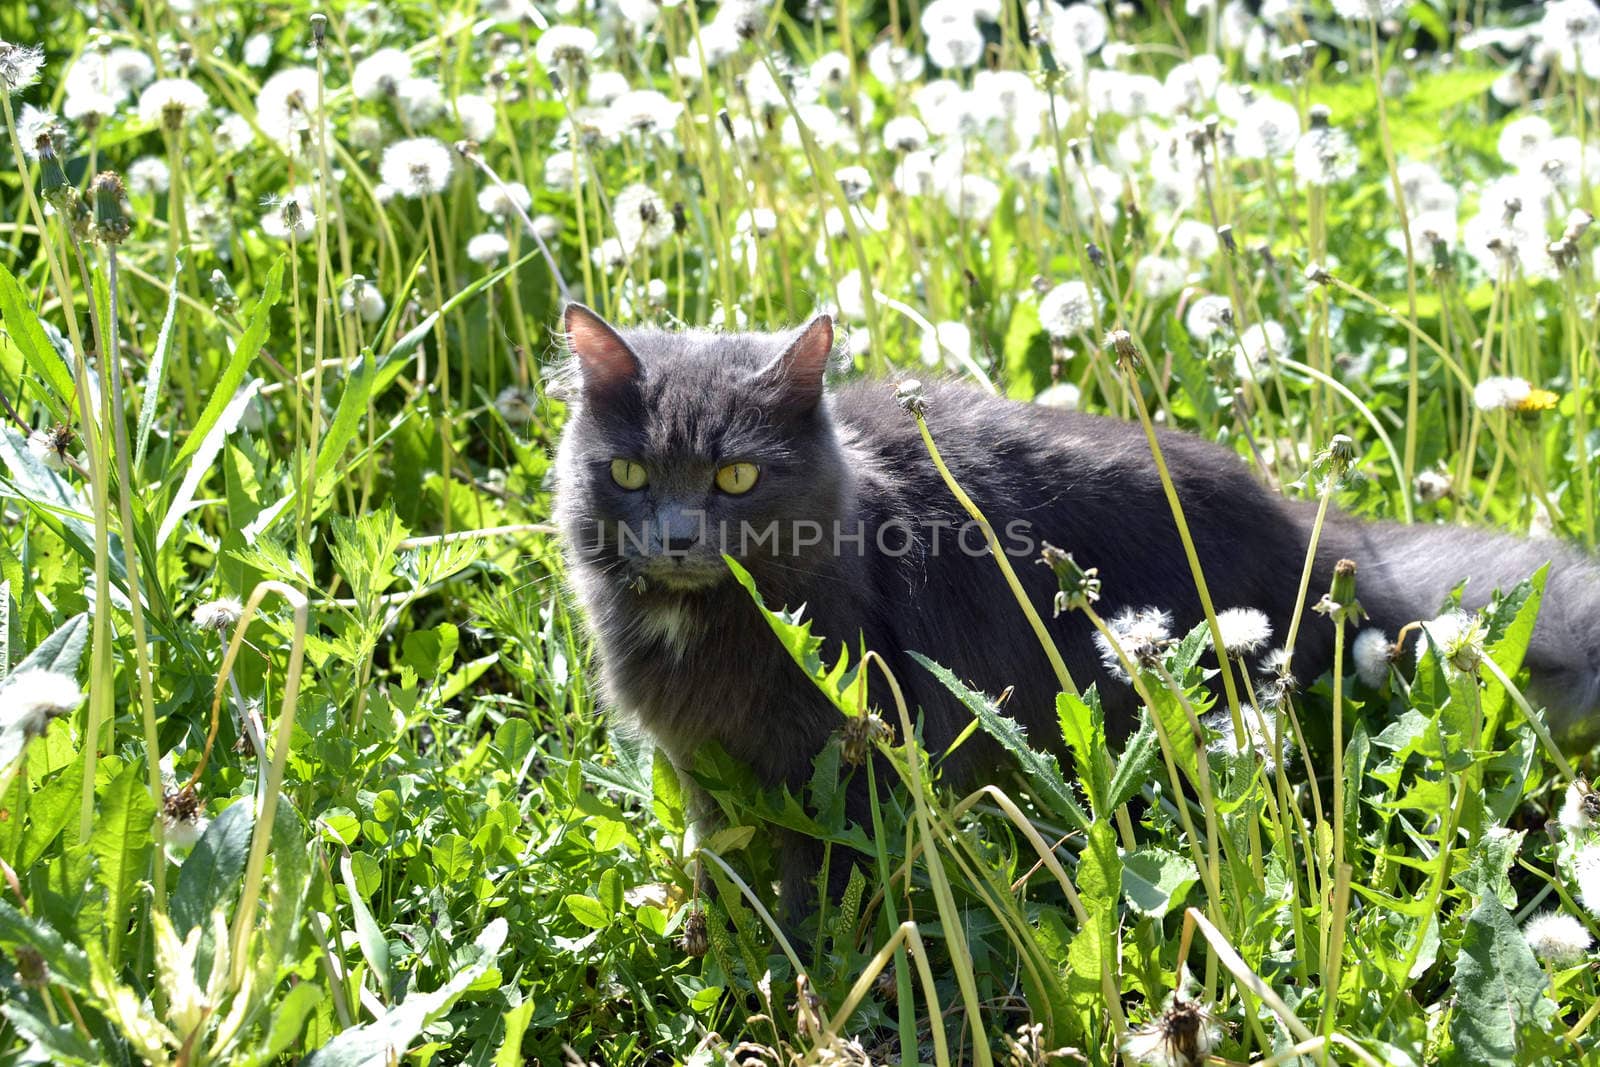 The gray cat hunts in dandelions.